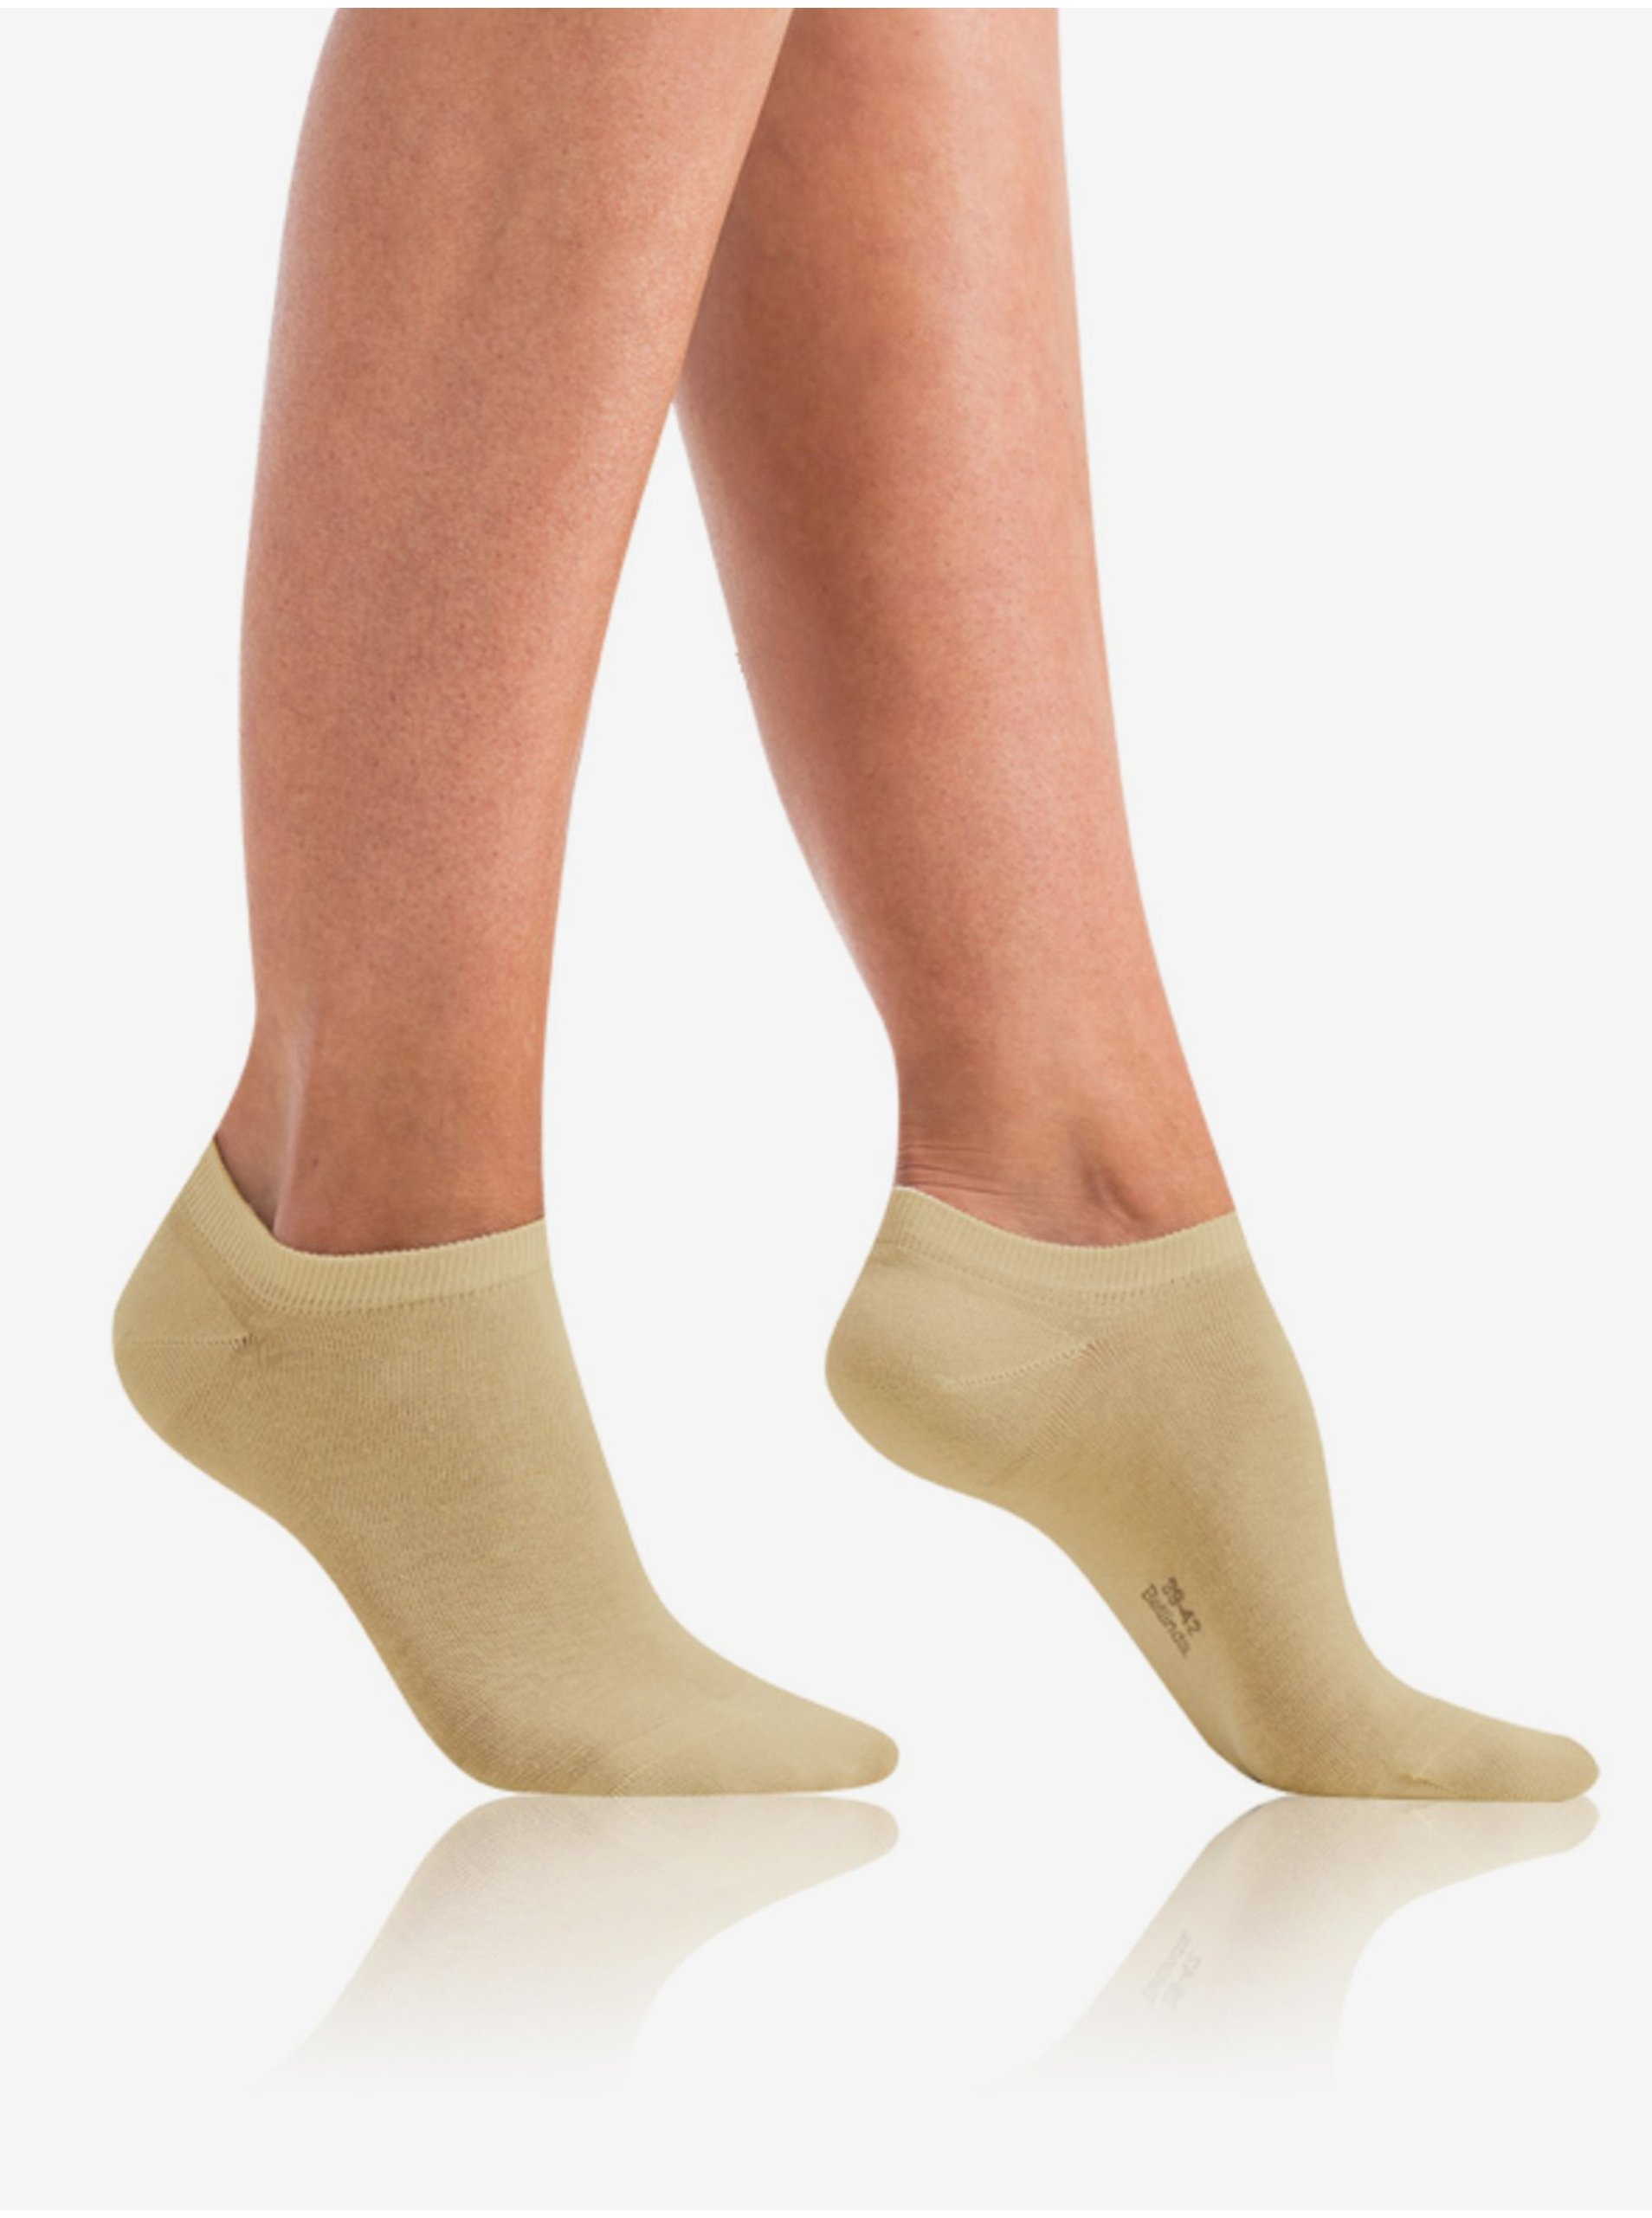 E-shop Béžové dámské ponožky Bellinda GREEN ECOSMART IN-SHOE SOCKS